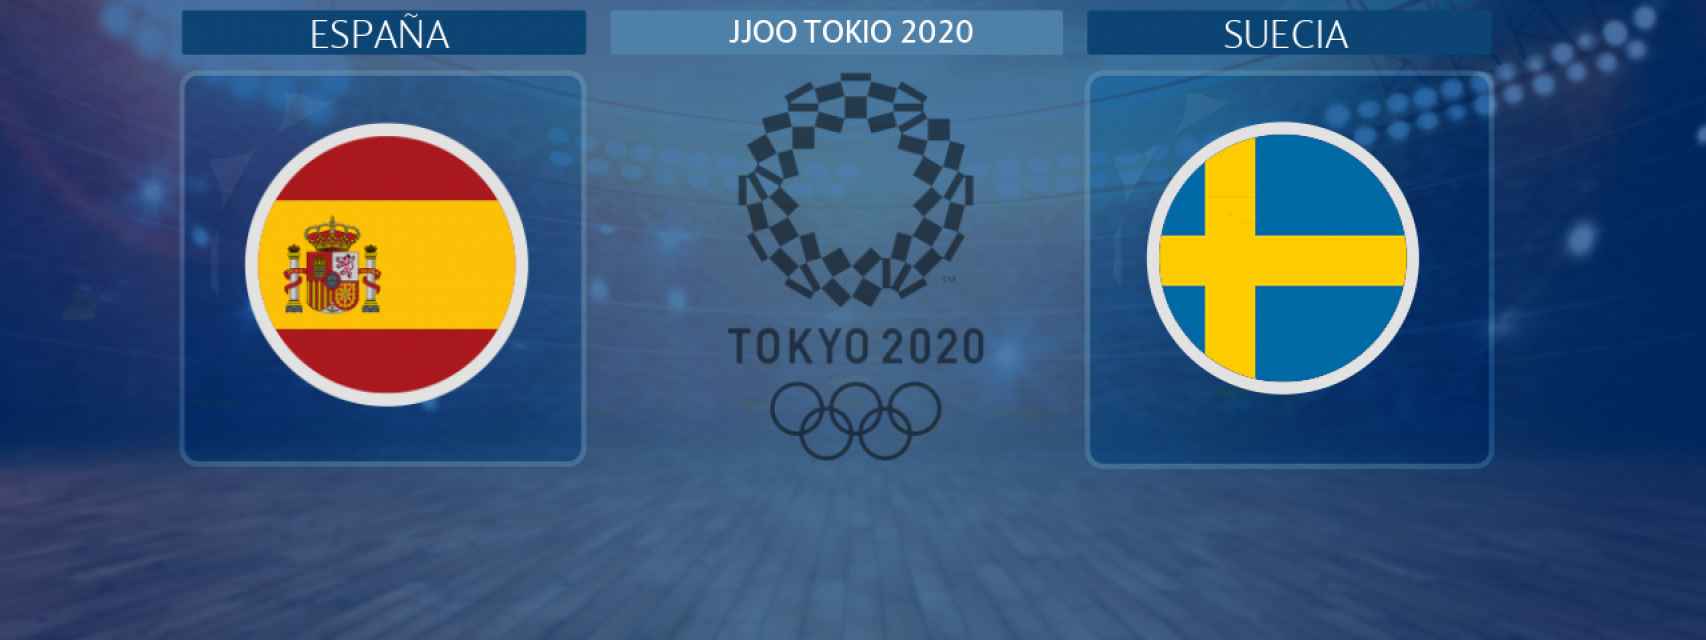 España - Suecia, partido de balonmano femenino de los JJOO Tokio 2020